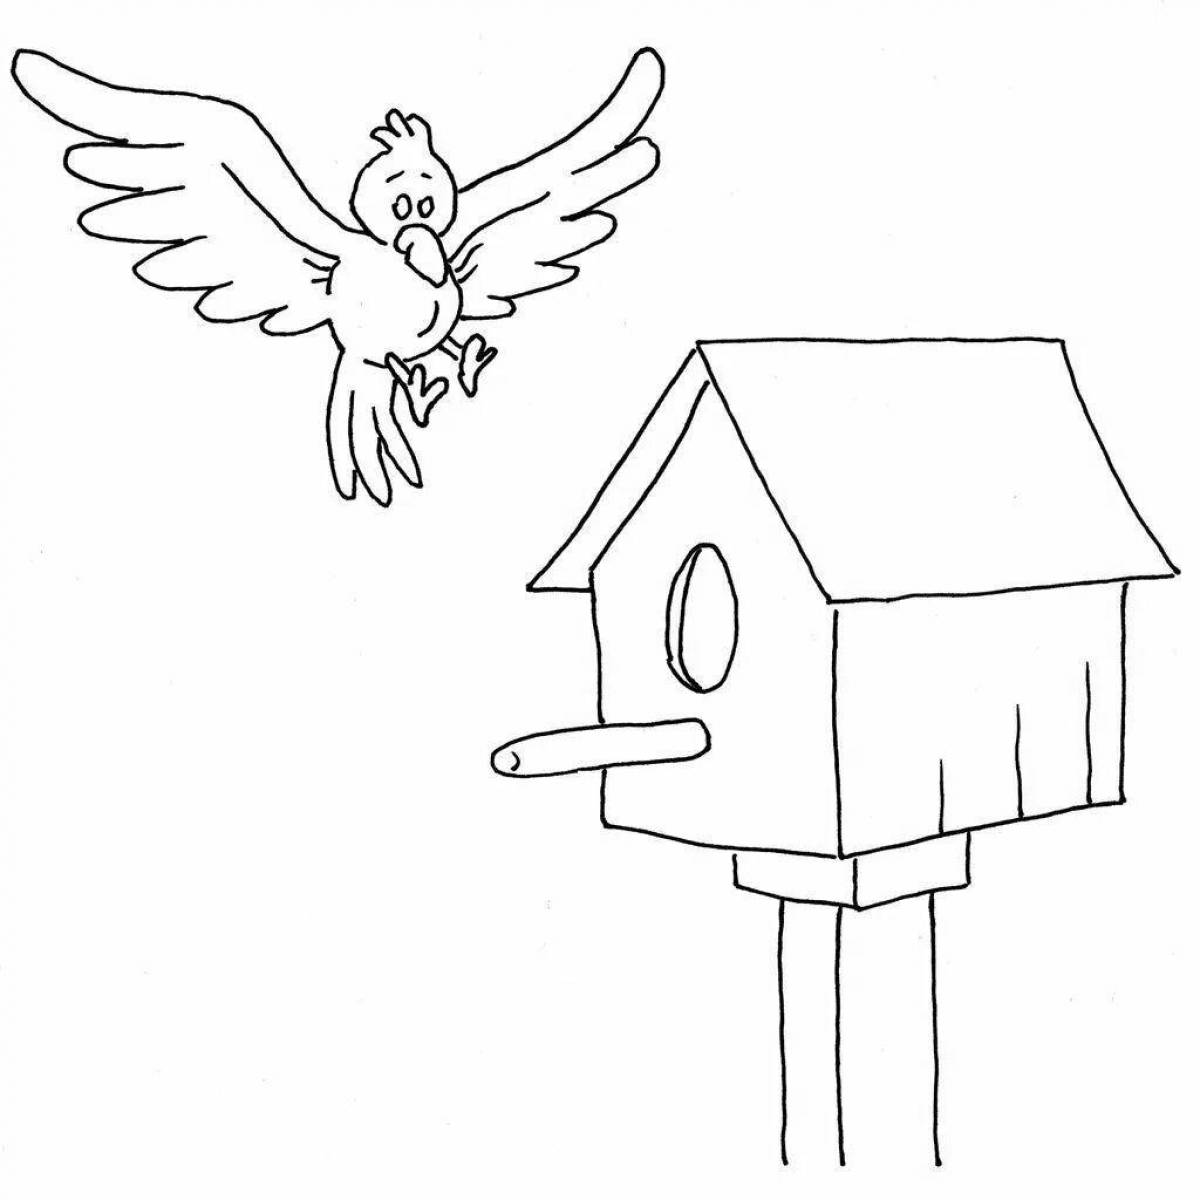 Birdhouse for children #5